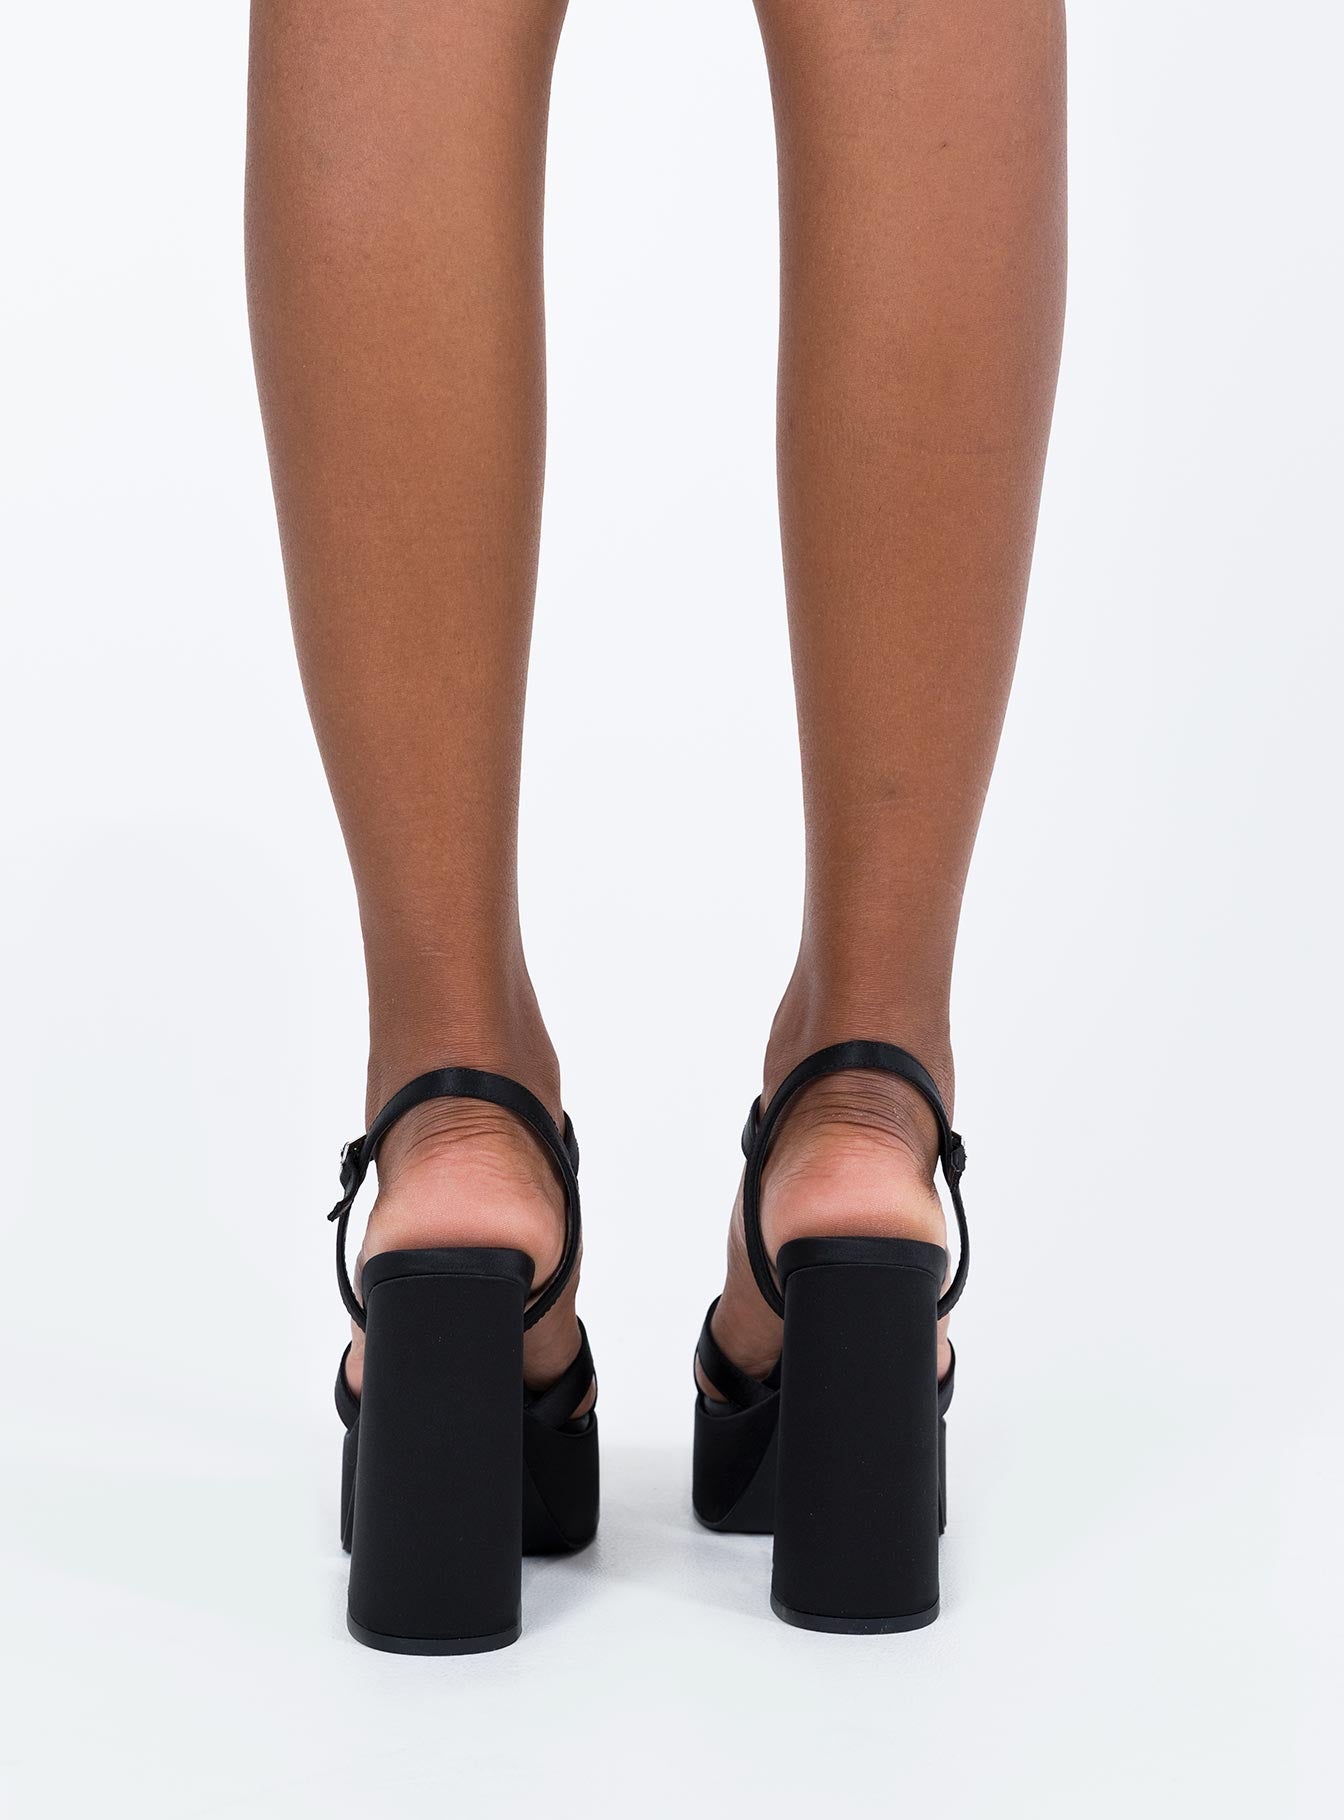 Perphy Women's Sandal Platform Slip On Block High Heels Slides Mule Brown 7  : Target